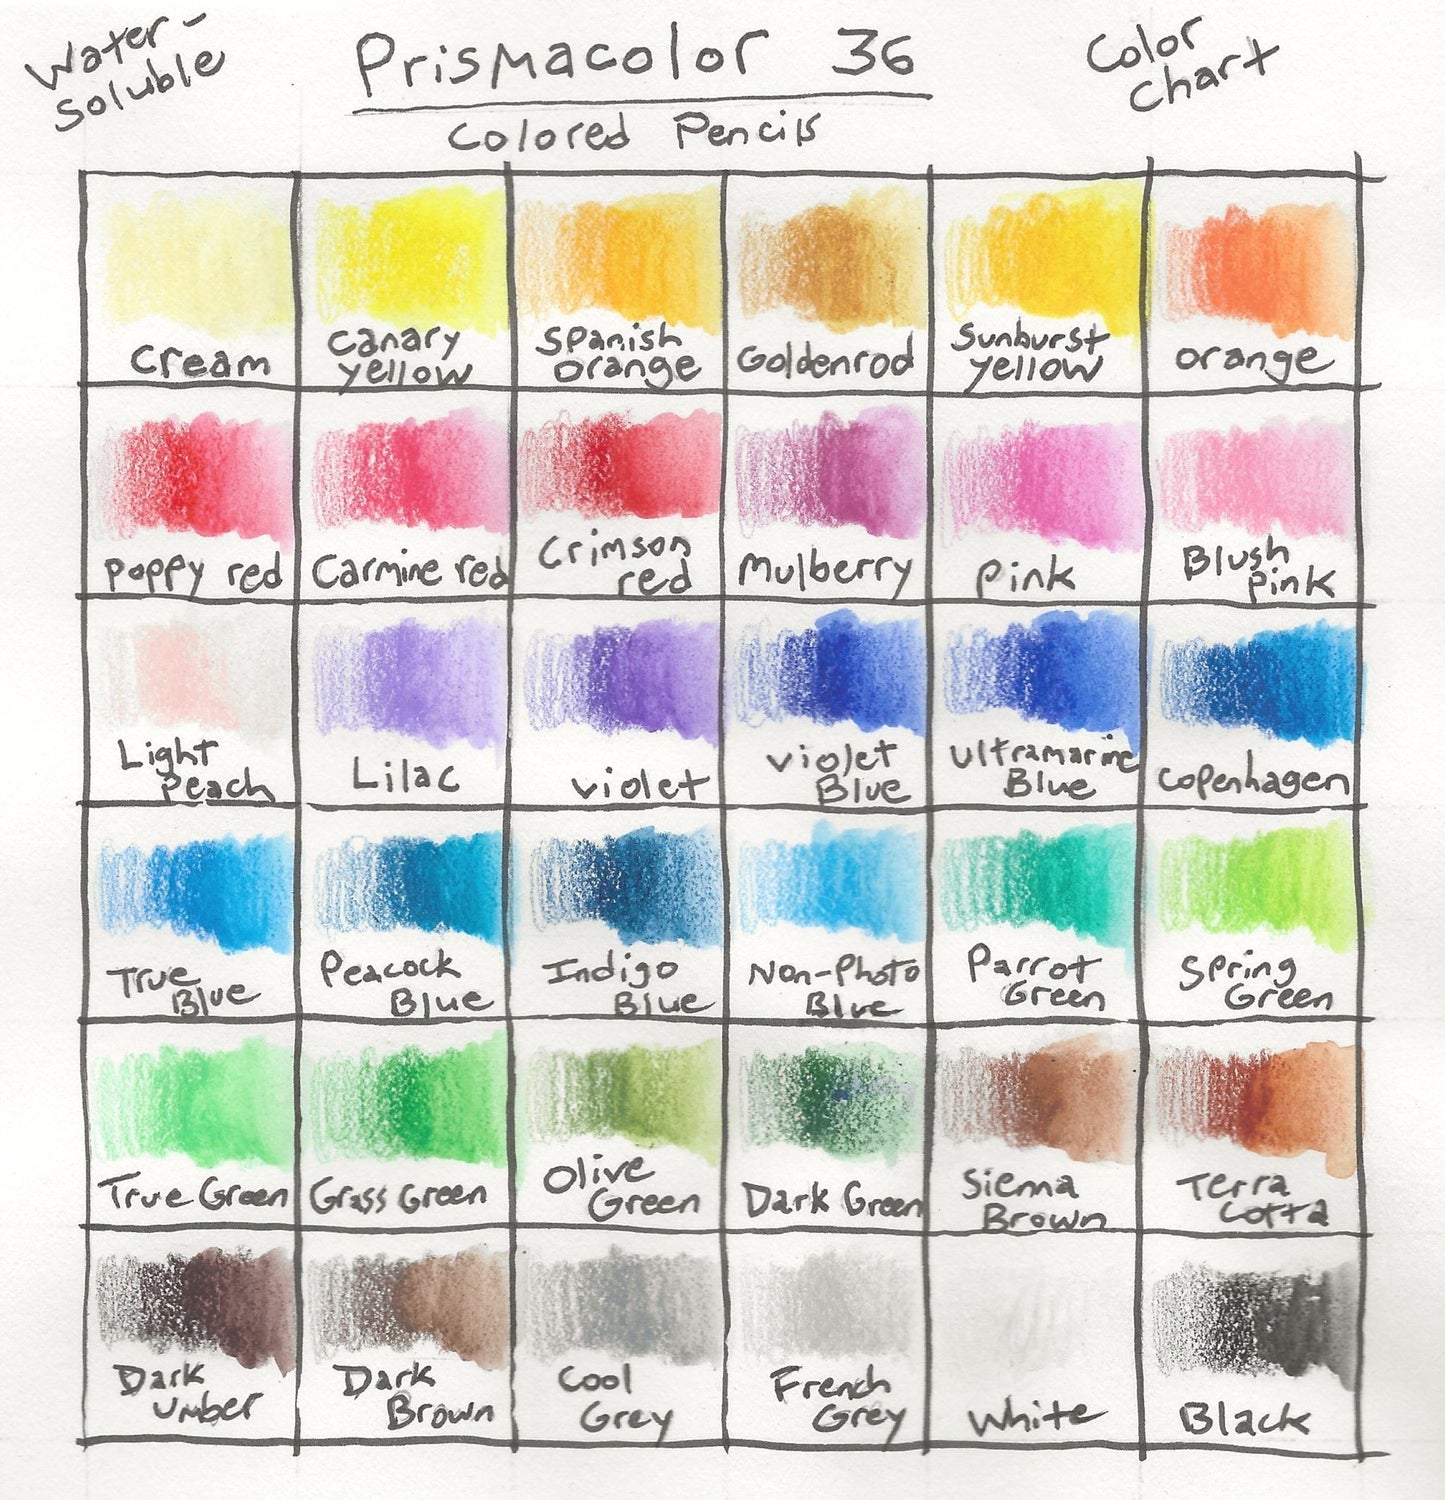 Prismacolor Premier Watercolour Pencil, 36CT